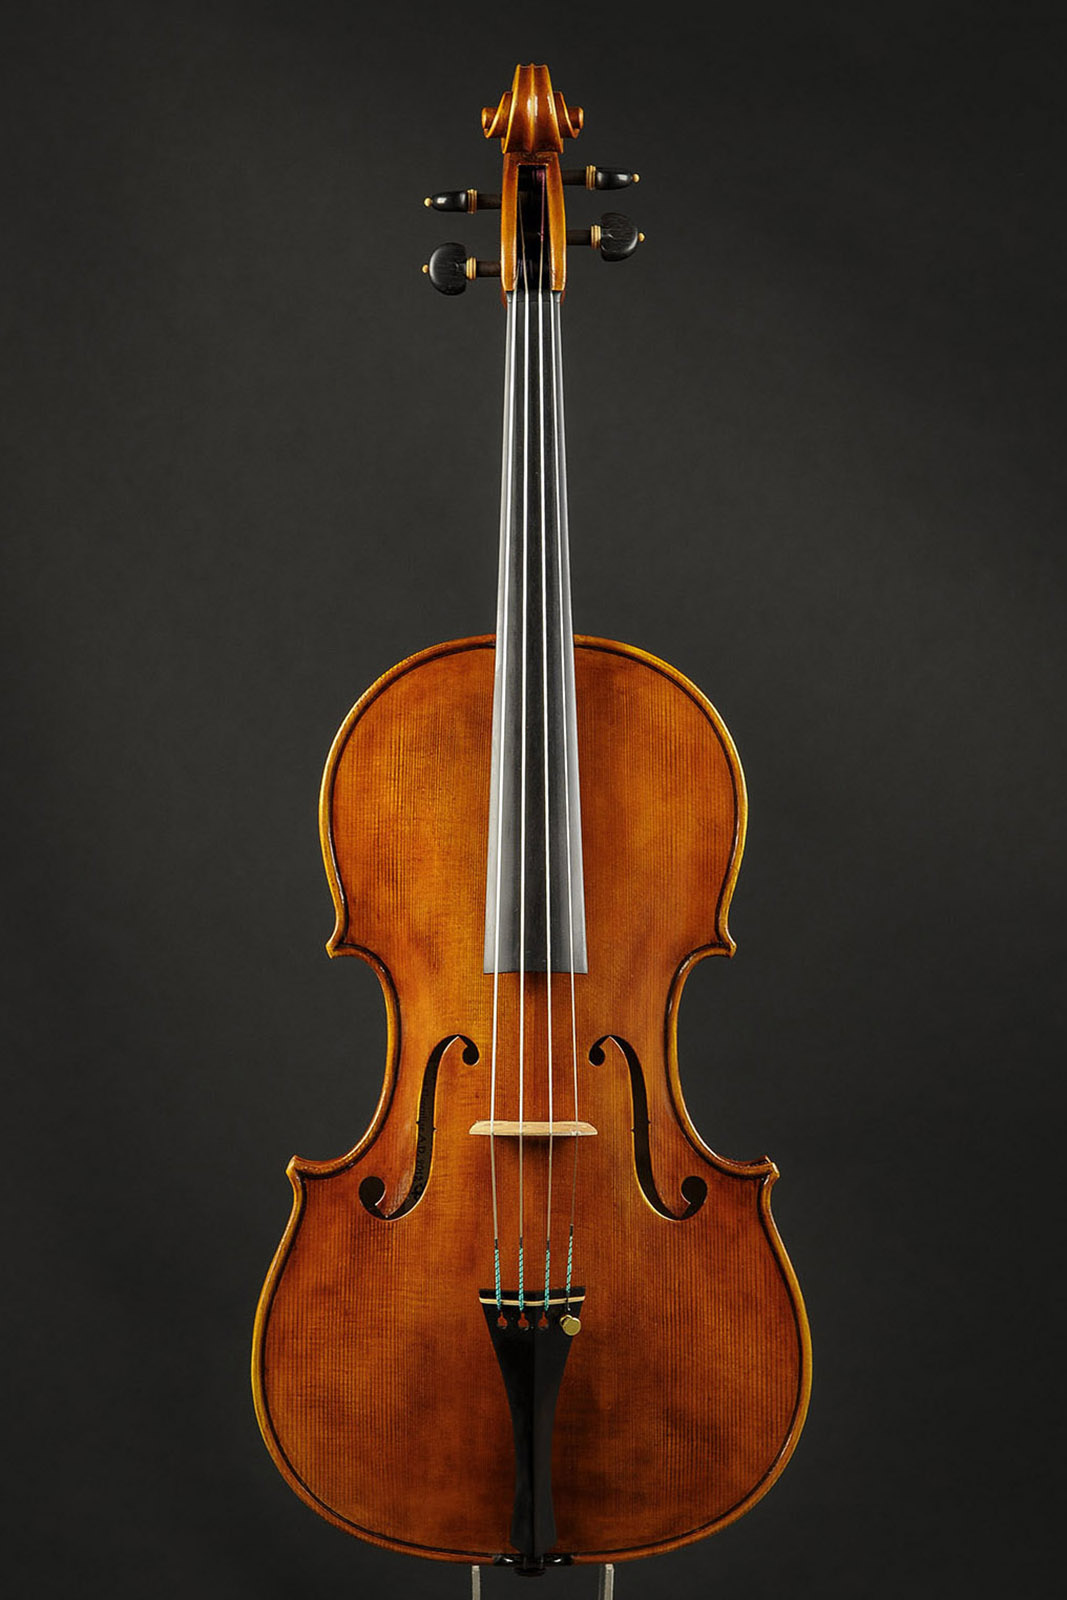 Antonio Stradivari Cremona 1672 “Populus“ cm 42 - Image 1